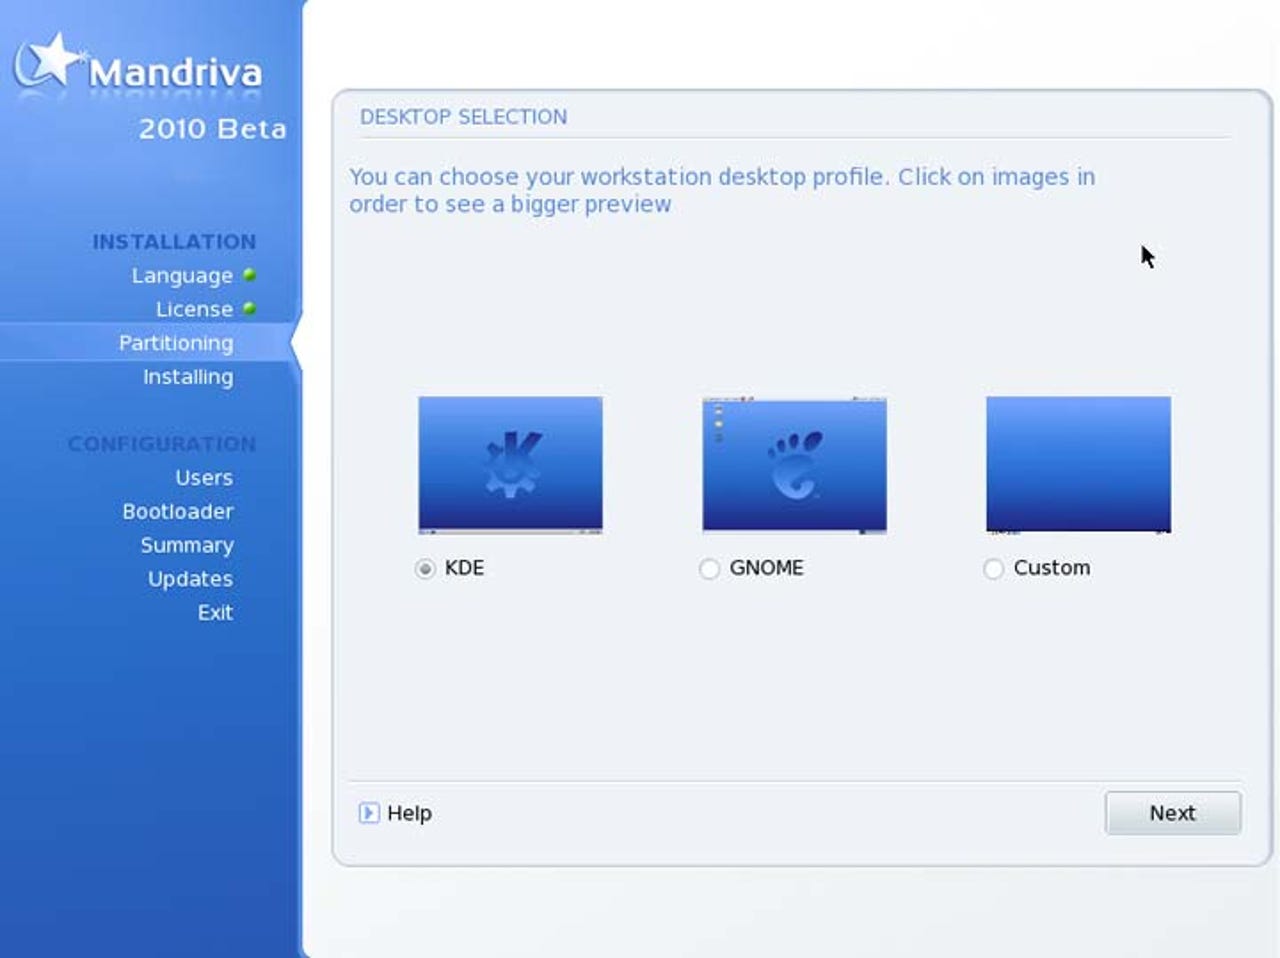 mandriva-2010-beta-screenshots8.jpg